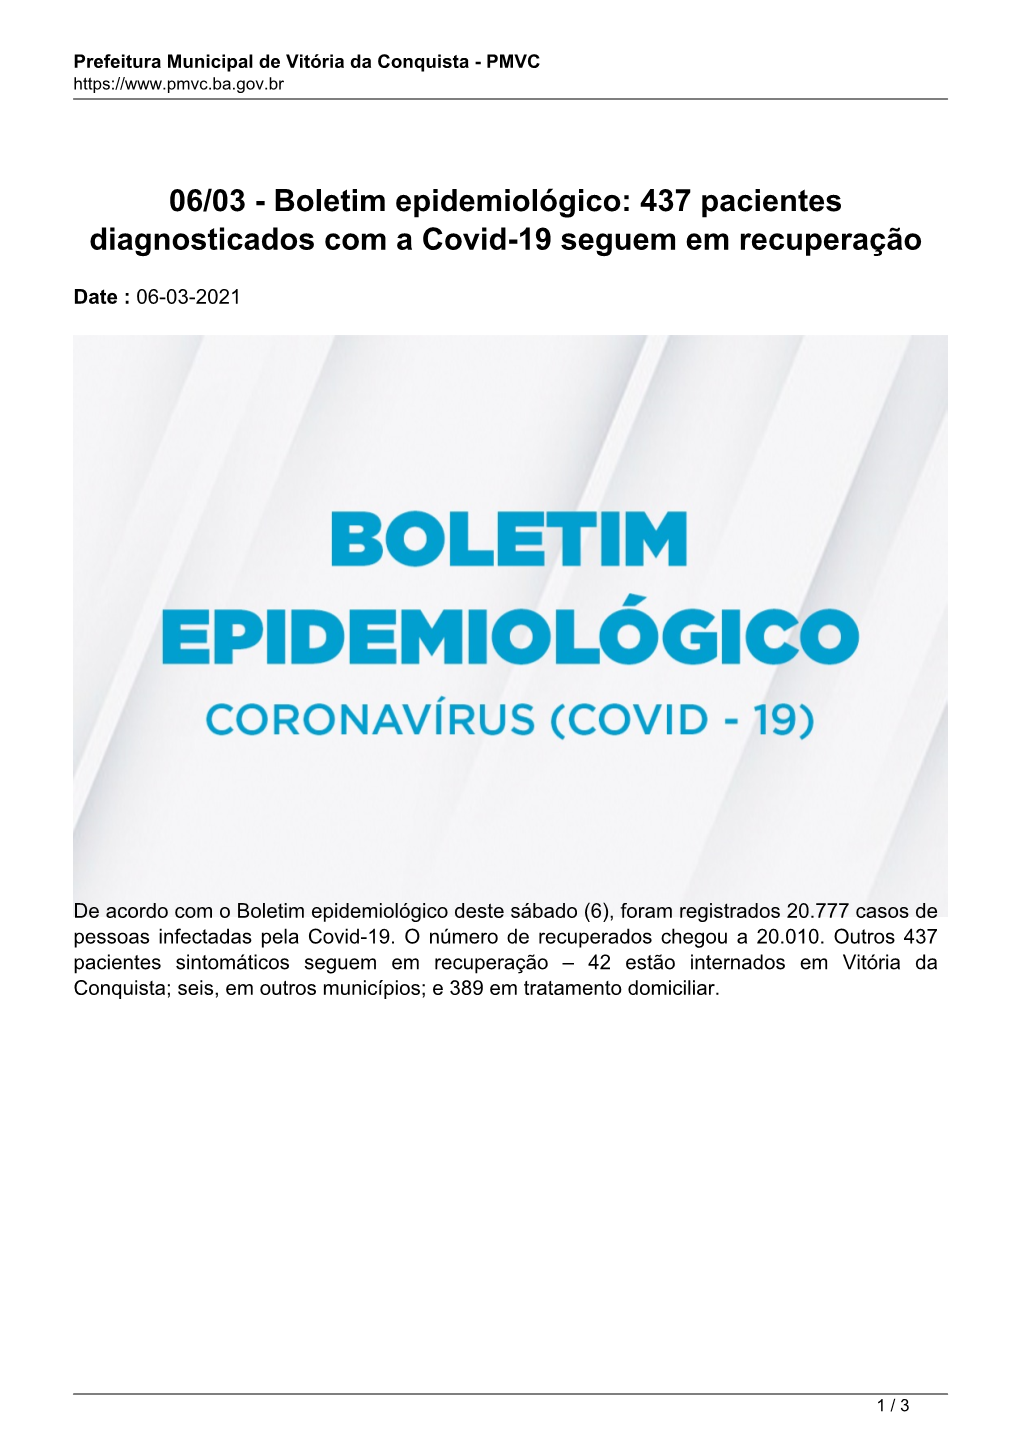 Boletim Epidemiológico: 437 Pacientes Diagnosticados Com a Covid-19 Seguem Em Recuperação